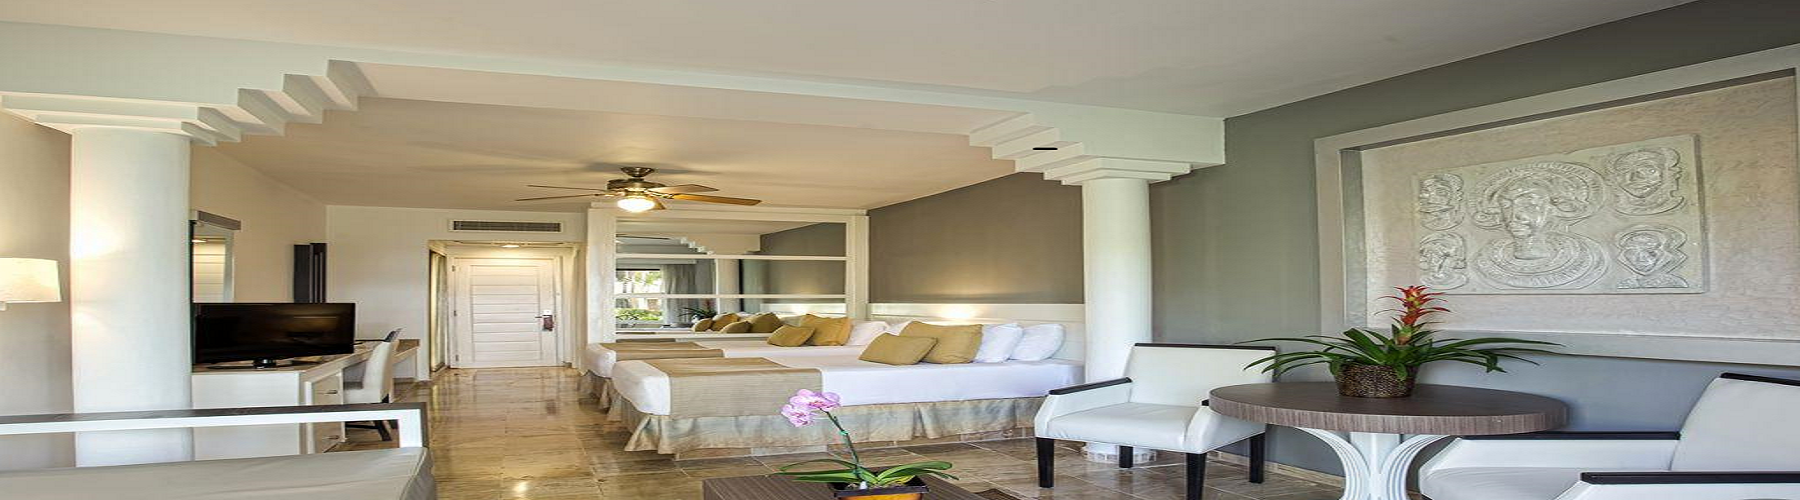 Забронировать отель Melia Caribe Beach Resort 5*